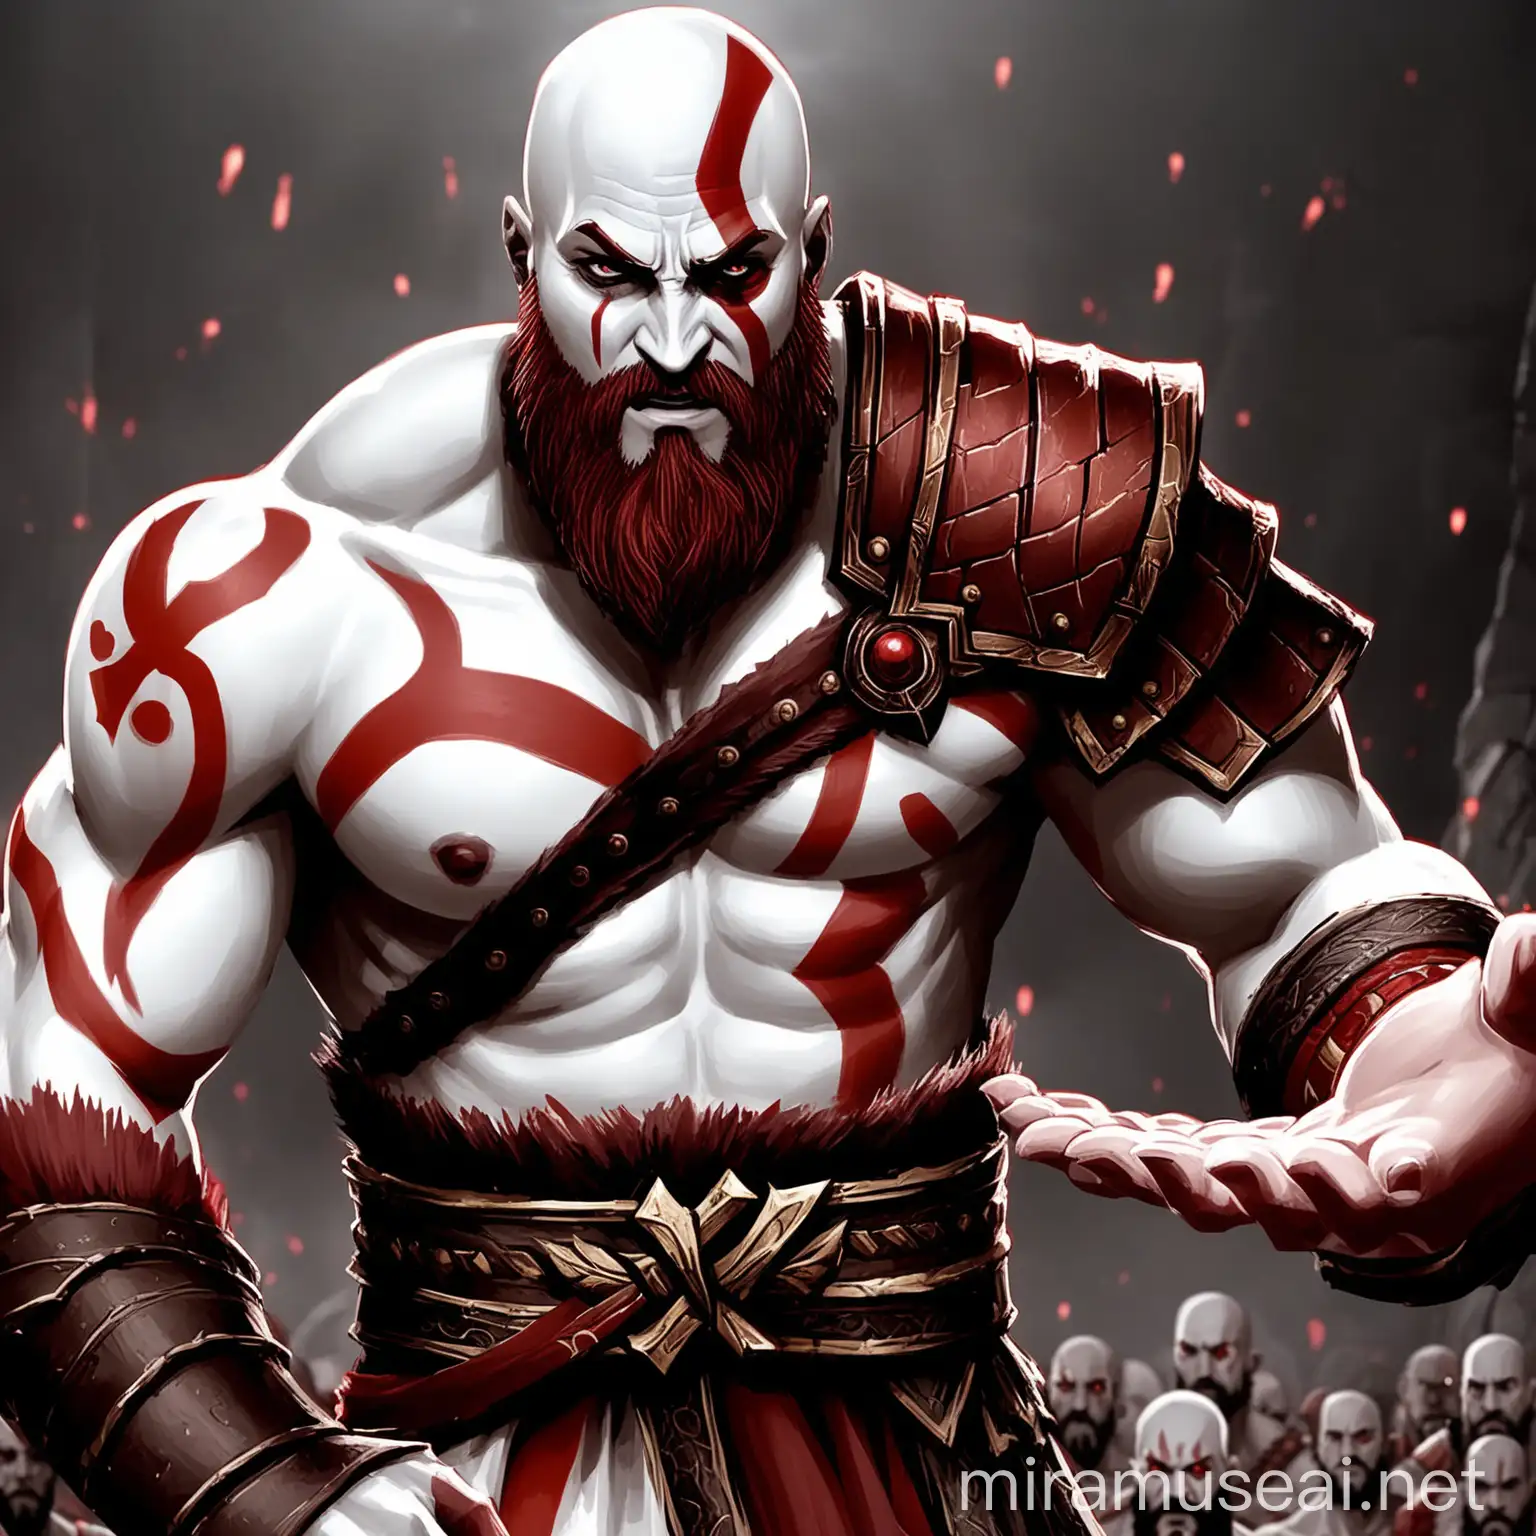 Kratos from God of War Extends Helping Hand